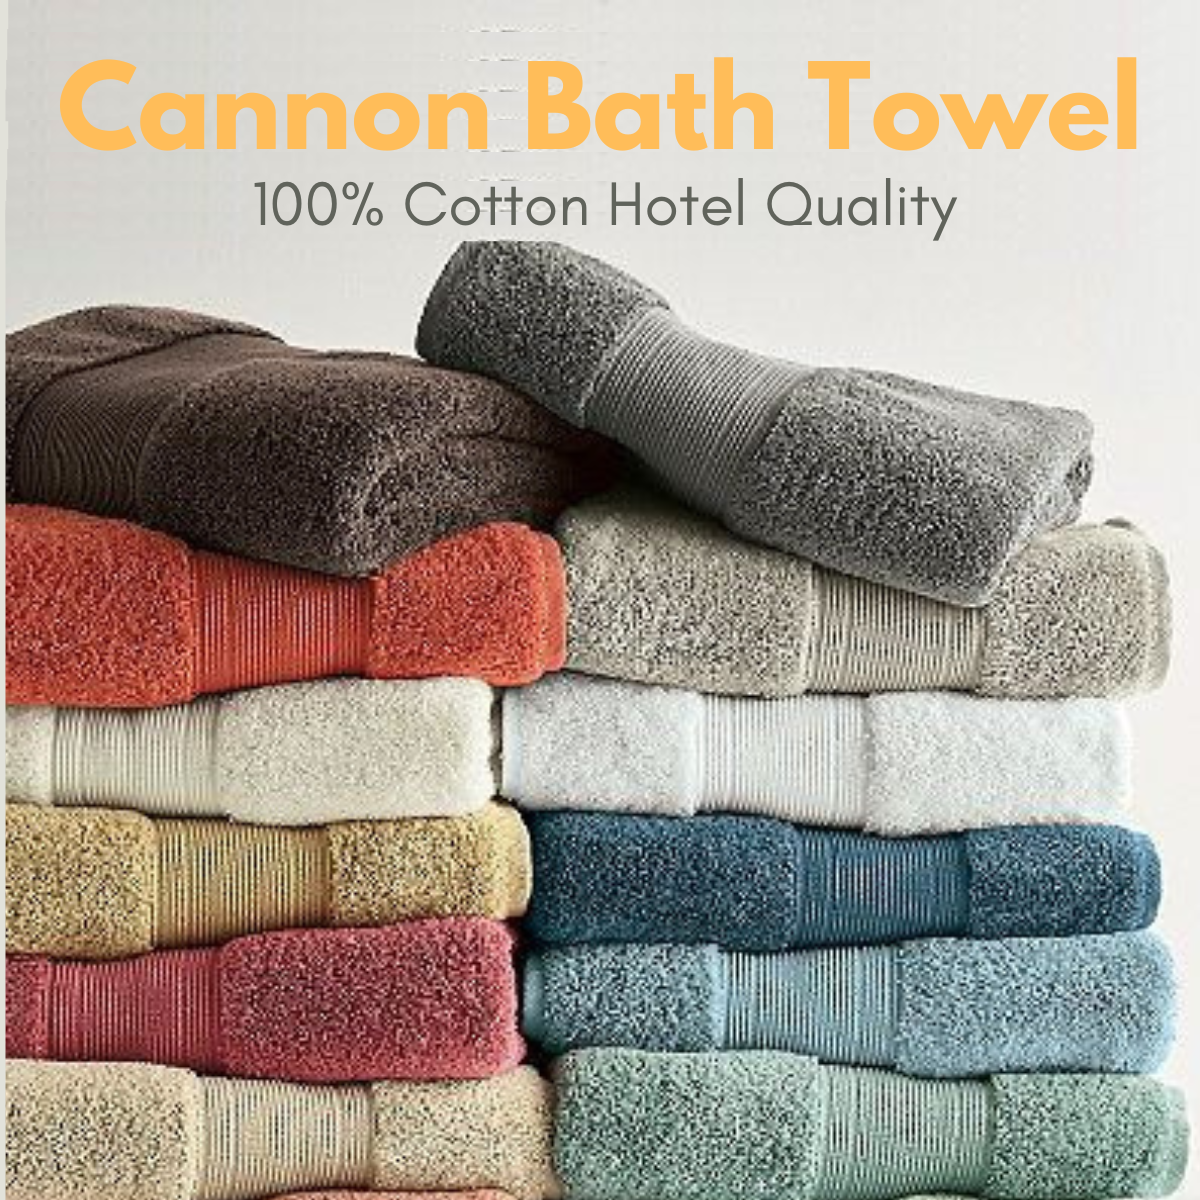 Cannon Bath Towel, 100% Cotton